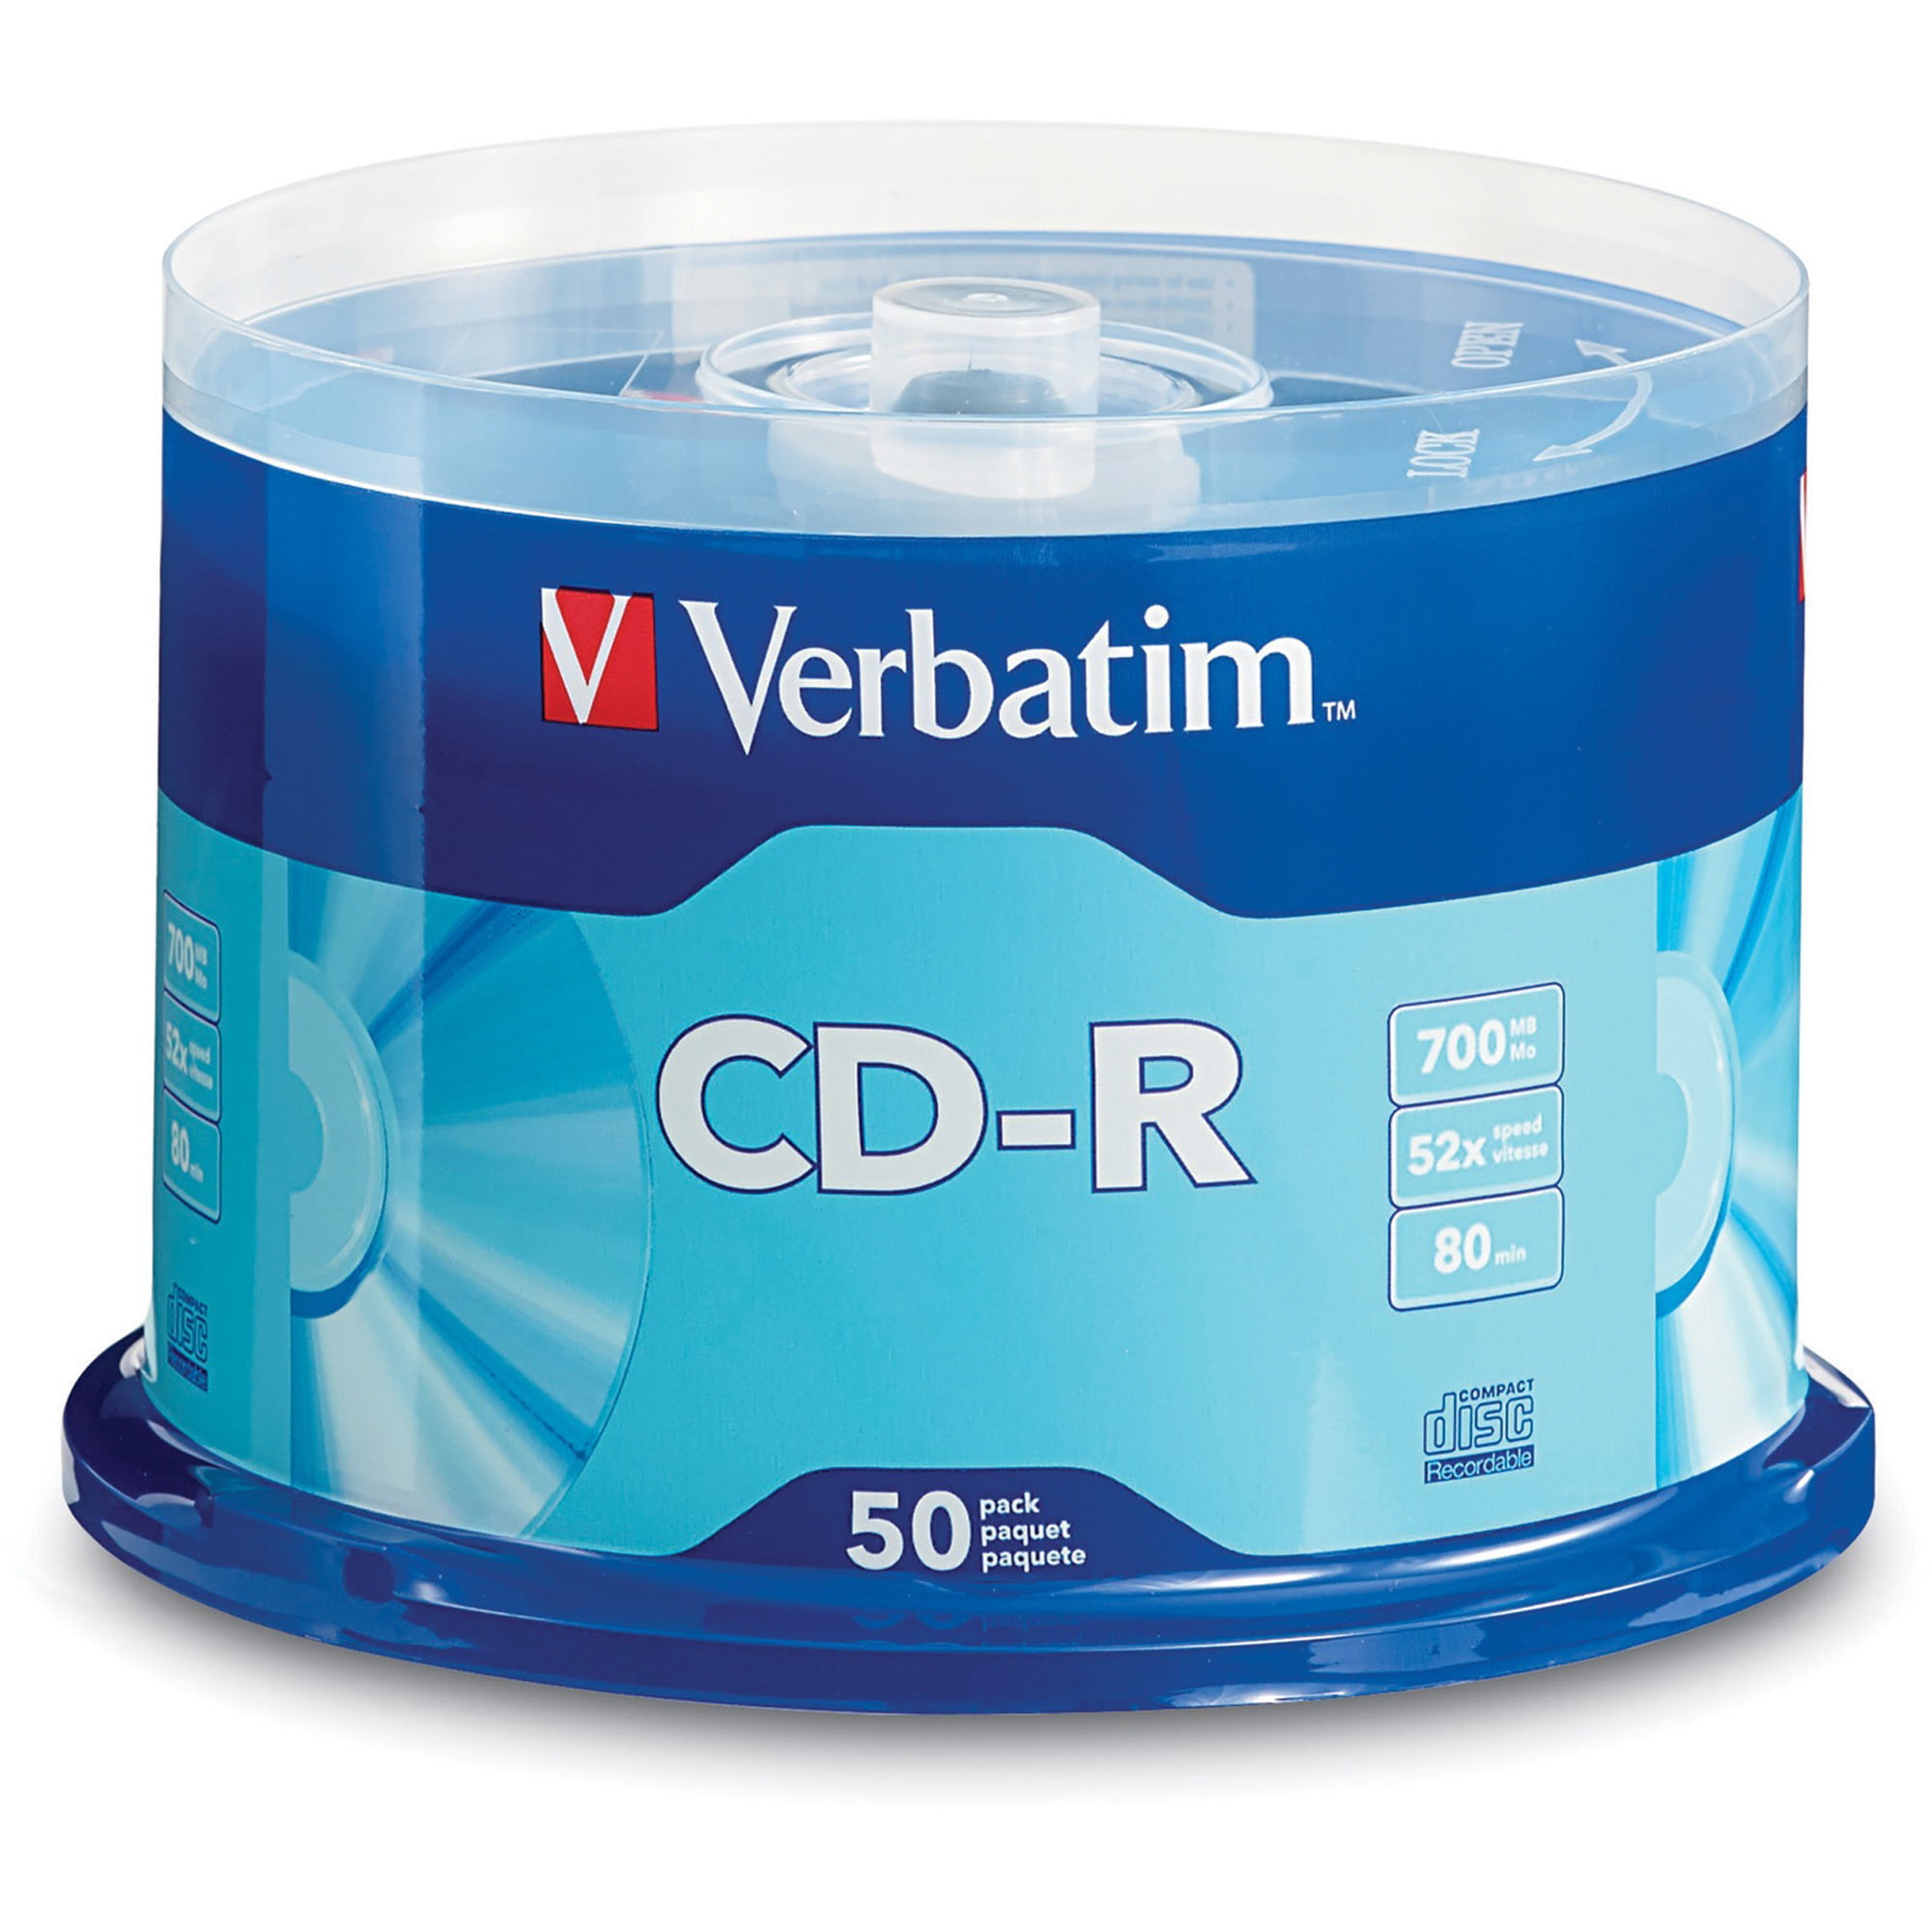 verbatim-700mb-52x-cd-r-2-pack-of-50-disc-cake-box-value-bundle